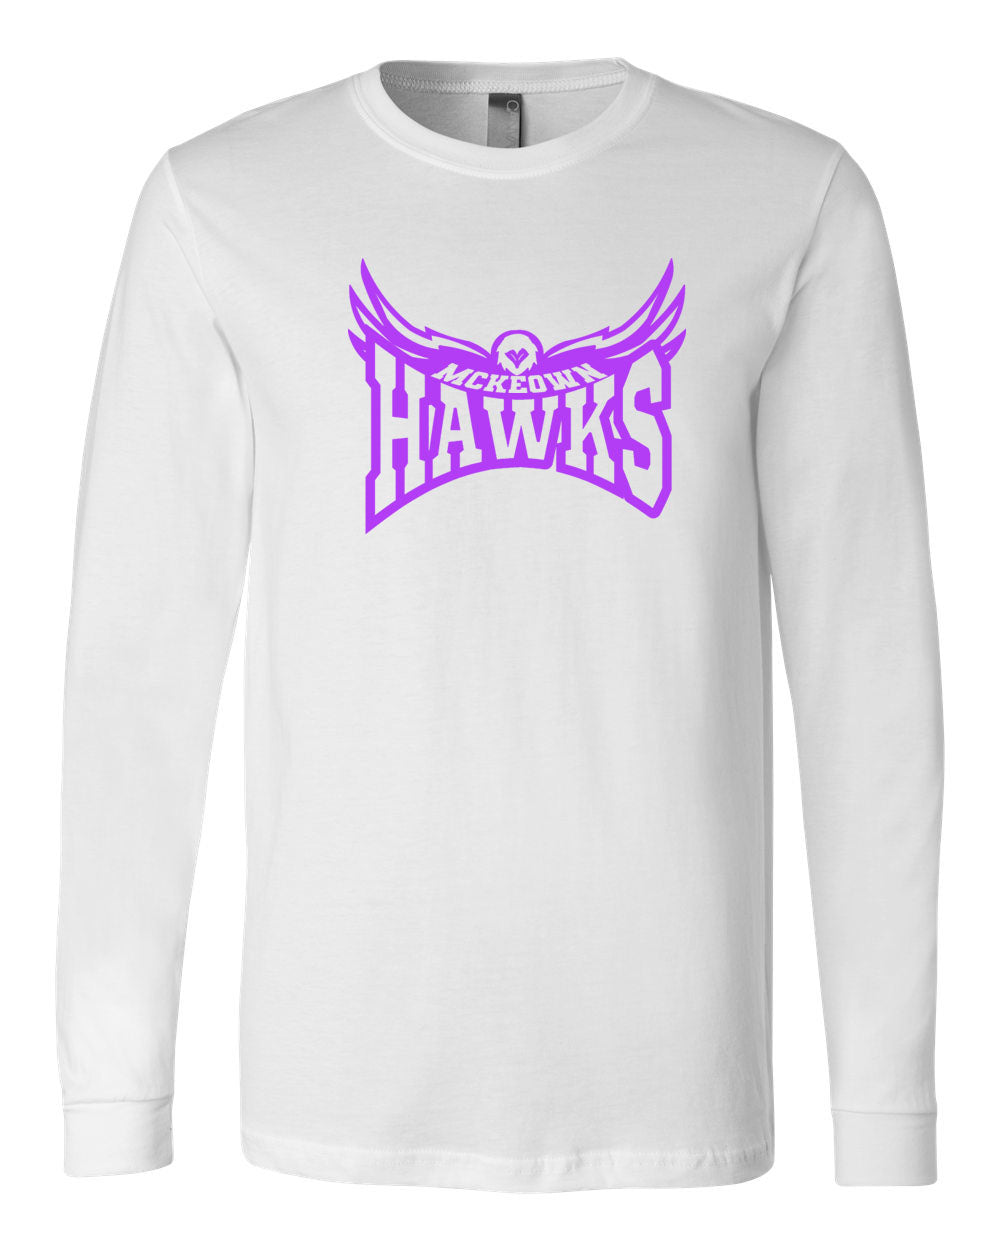 Hampton Hawk Long Sleeve Shirt